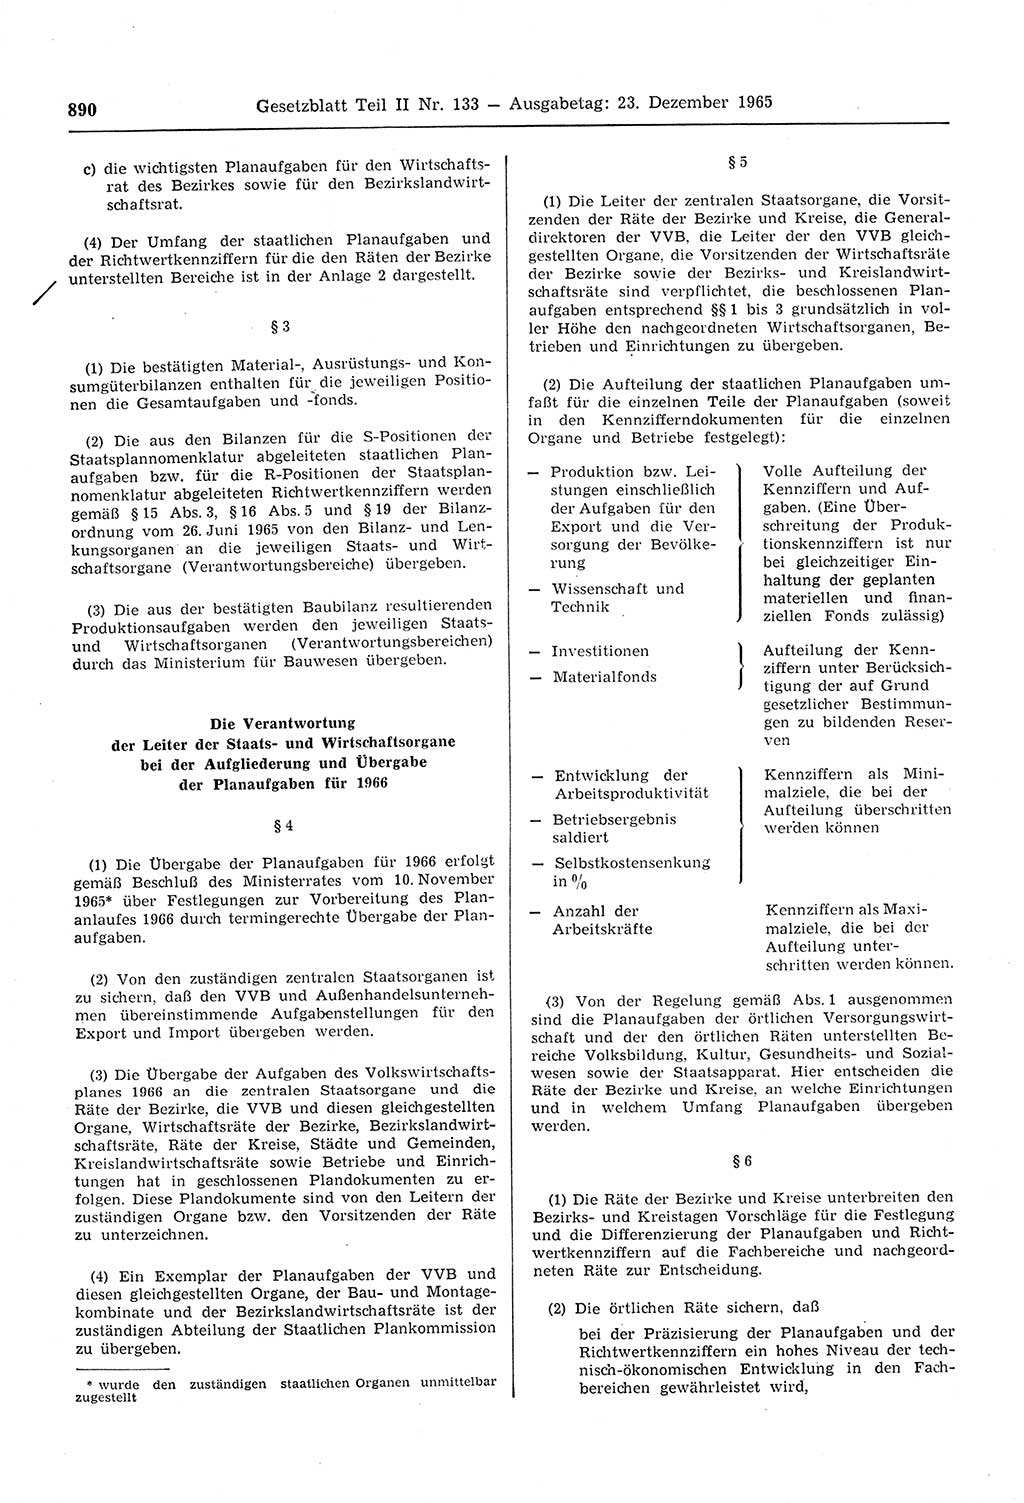 Gesetzblatt (GBl.) der Deutschen Demokratischen Republik (DDR) Teil ⅠⅠ 1965, Seite 890 (GBl. DDR ⅠⅠ 1965, S. 890)